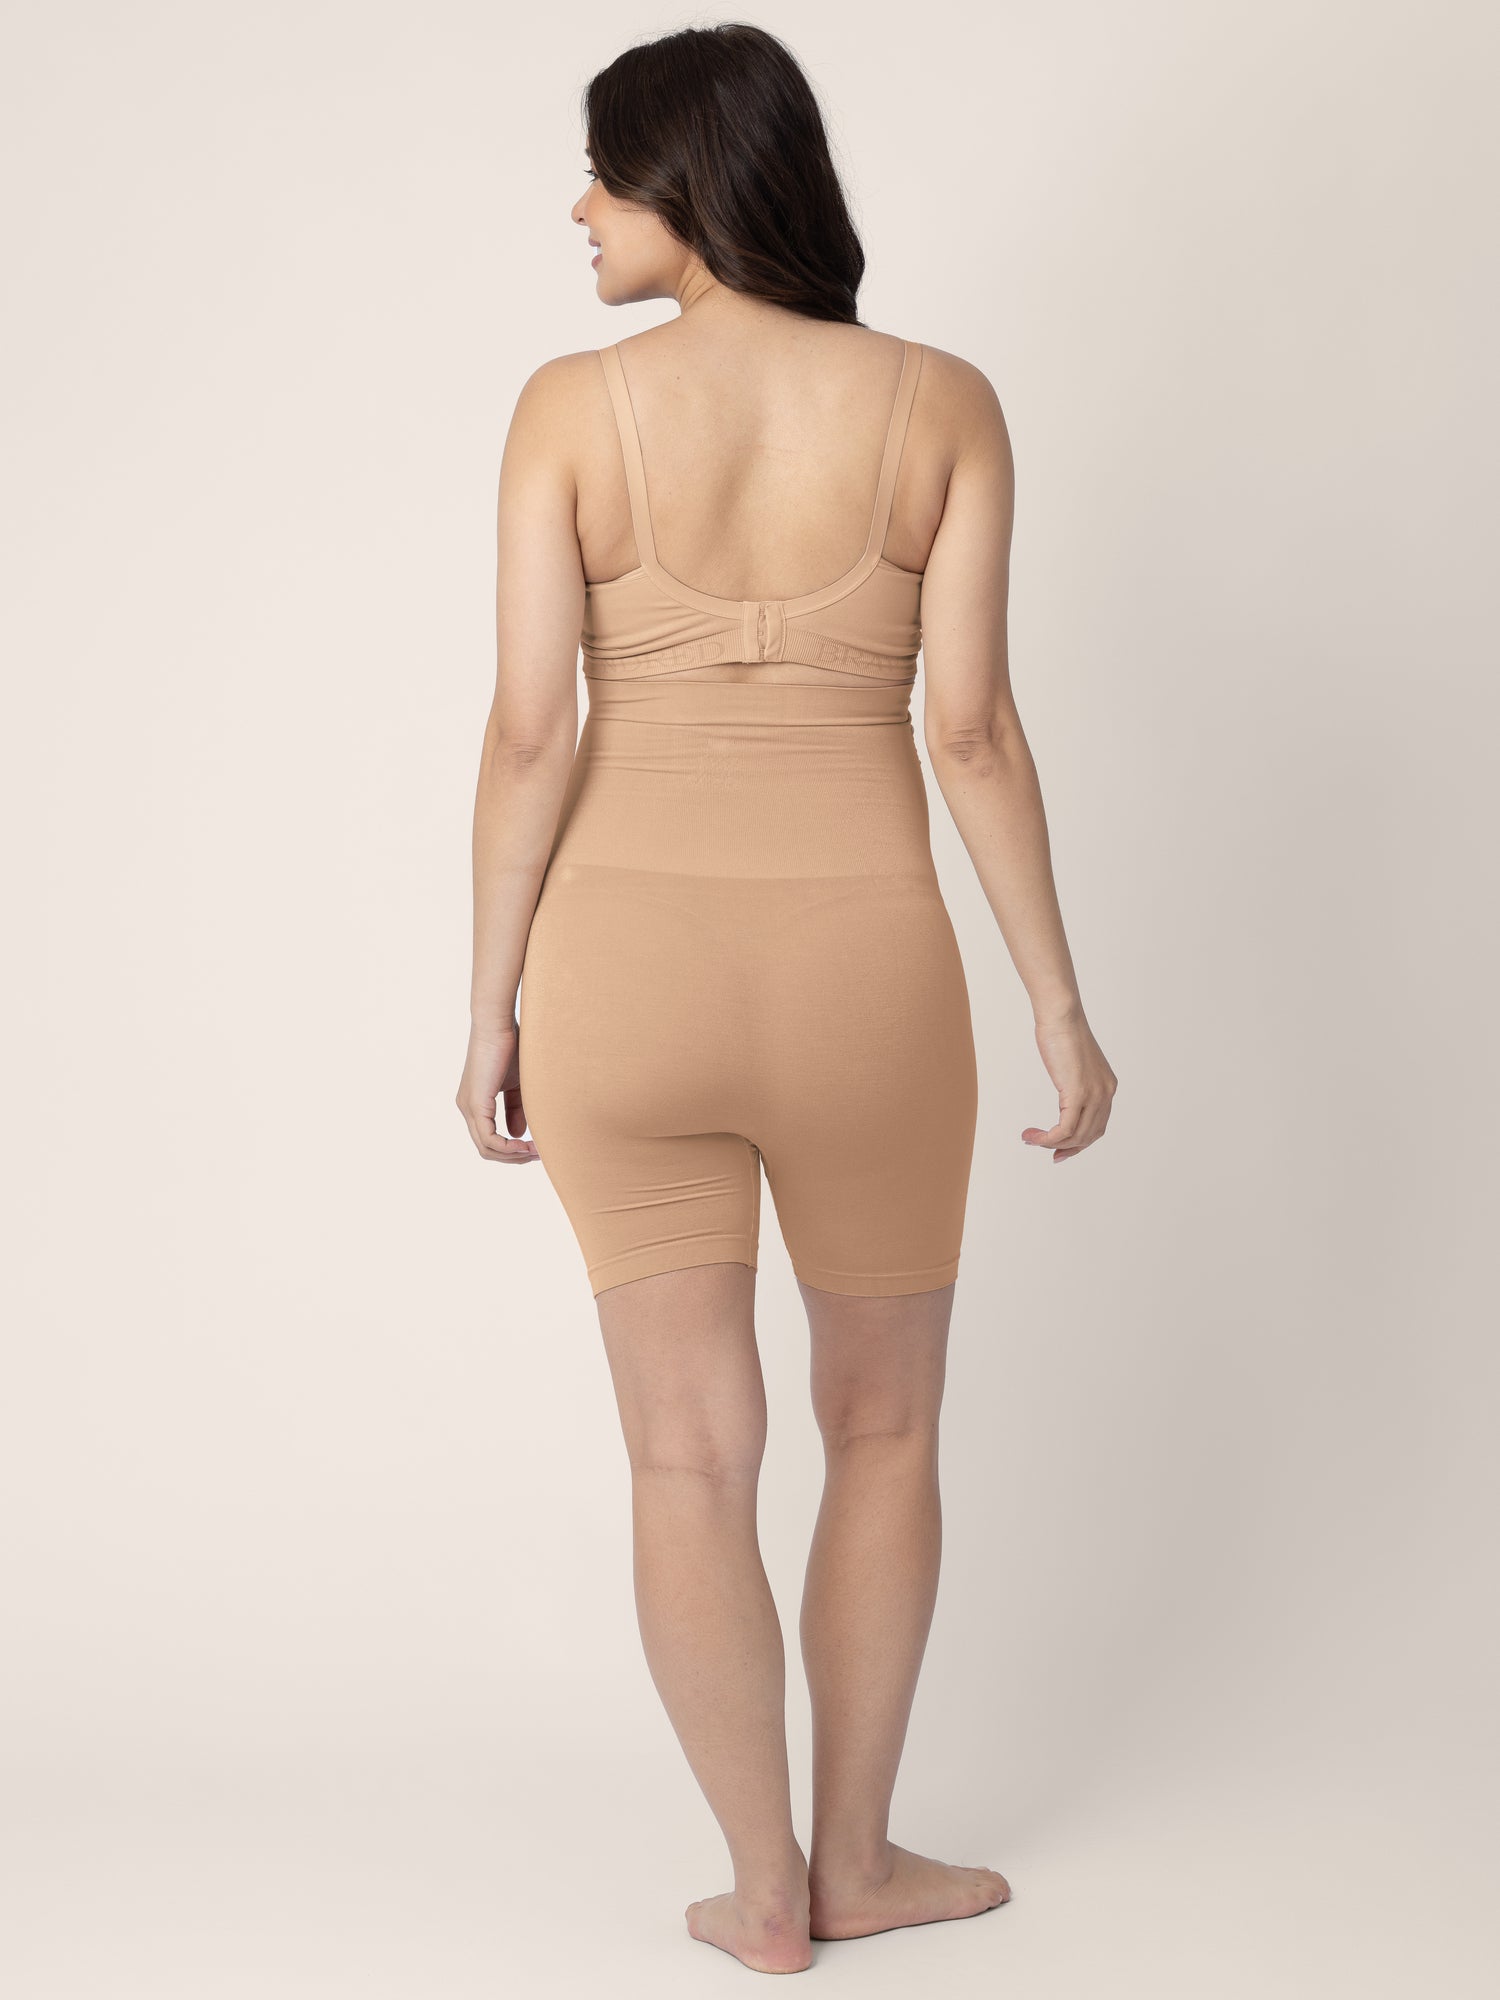 Plain Beige Pregnancy Tummy Shapewear Knicker at Rs 2200/piece in